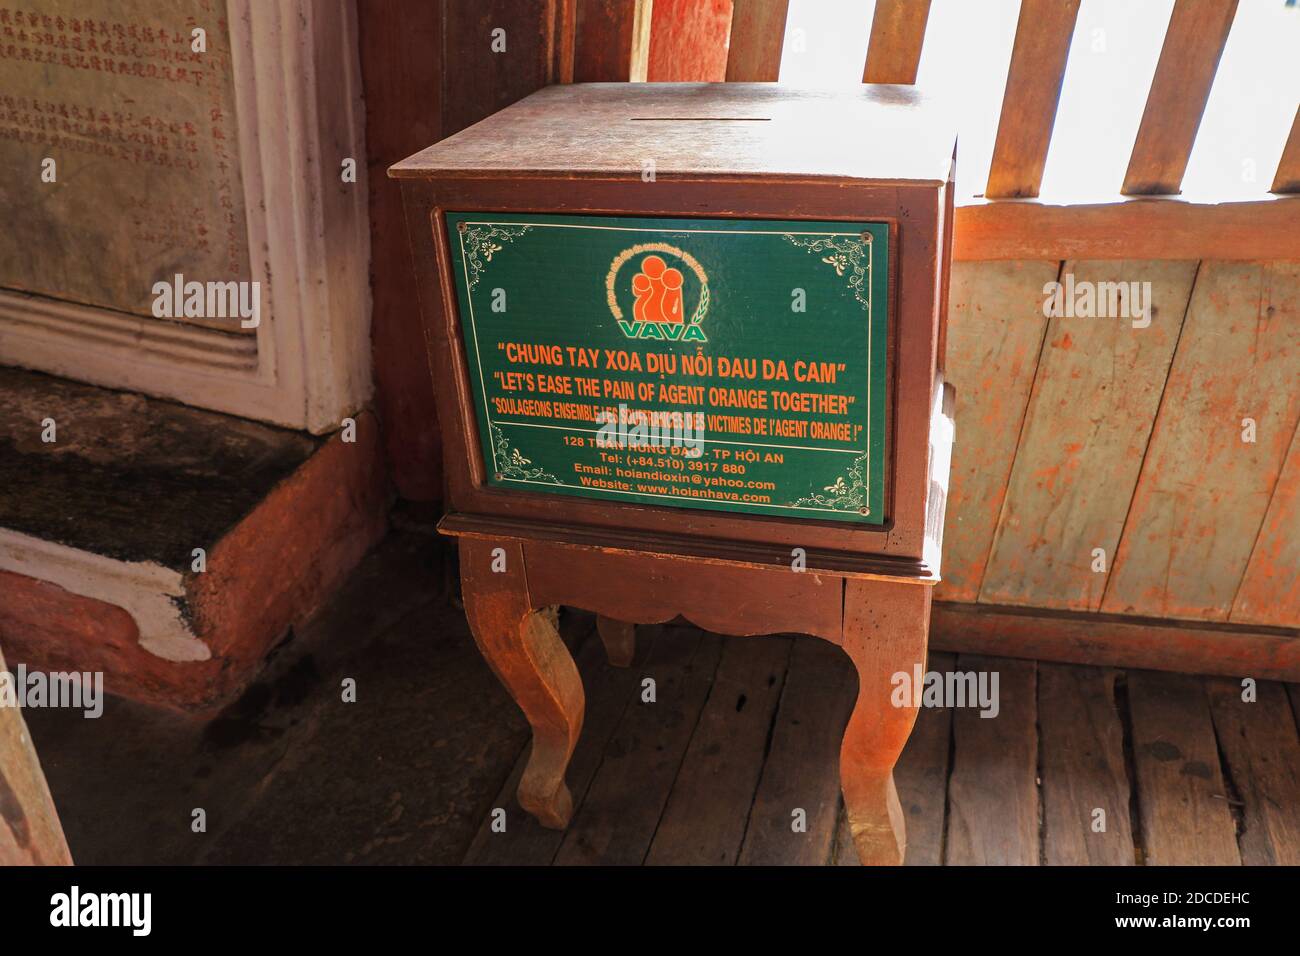 Una scatola di raccolta o di donazione che raccoglie fondi per alleviare il dolore dell'Agente Orange utilizzato durante la guerra del Vietnam, Hoi An, Vietnam, Asia Foto Stock